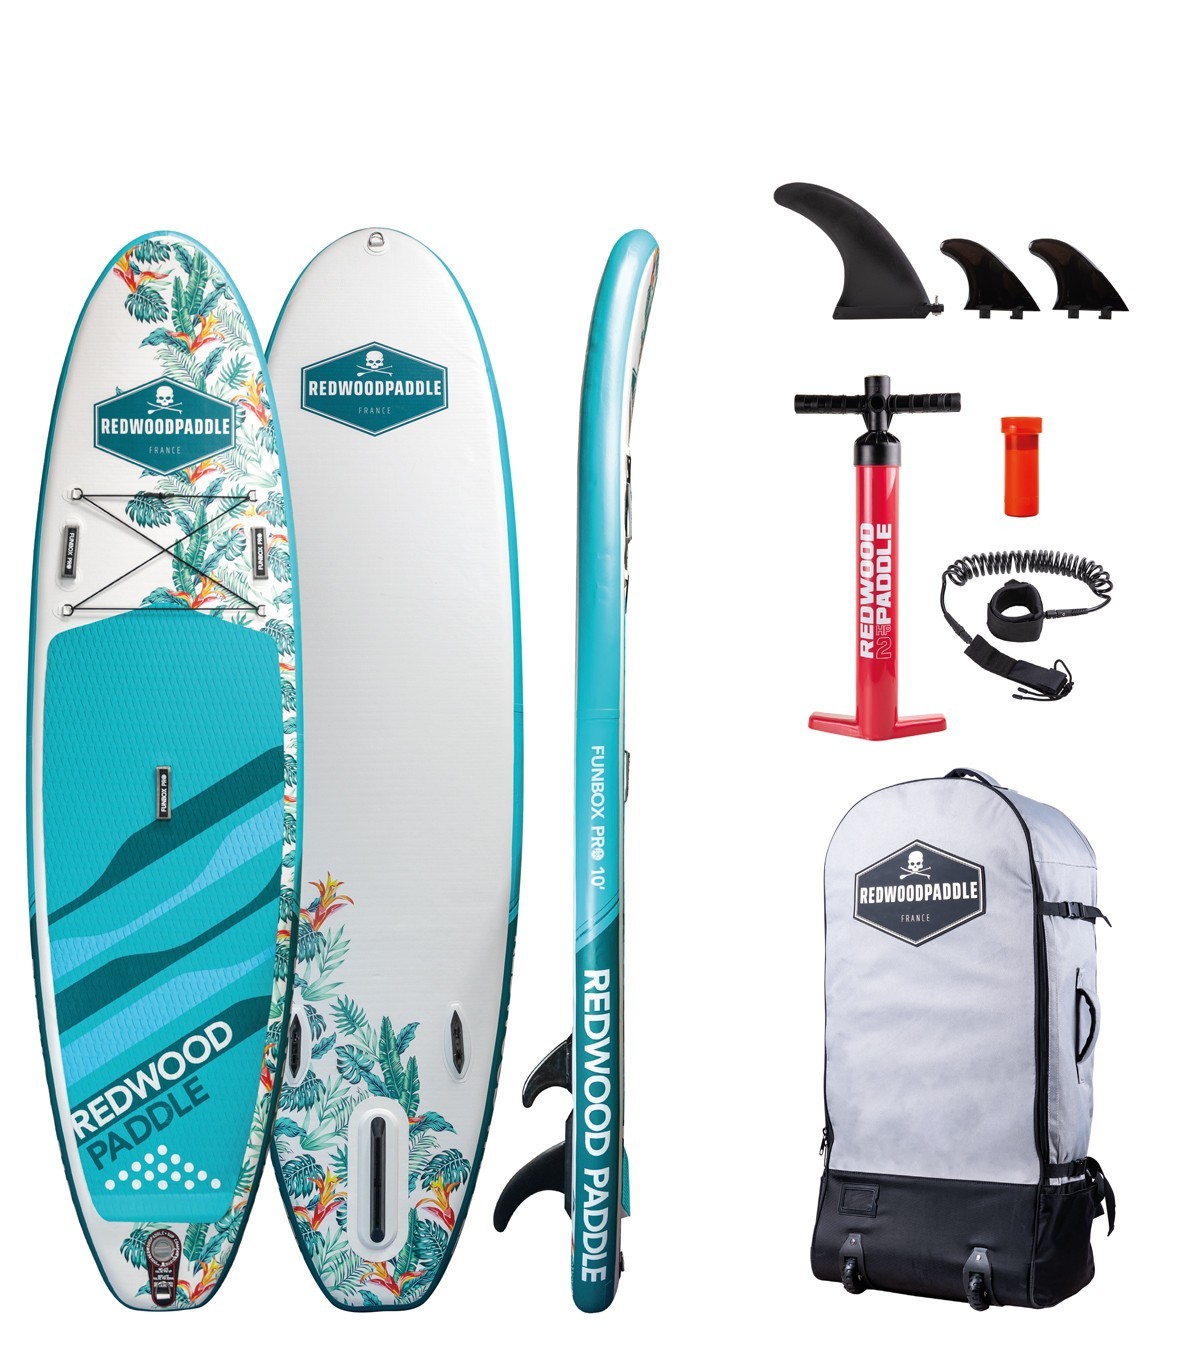 Bolsa estanca para kayaks y tablas de paddle surf de 5 a 30 Litros.